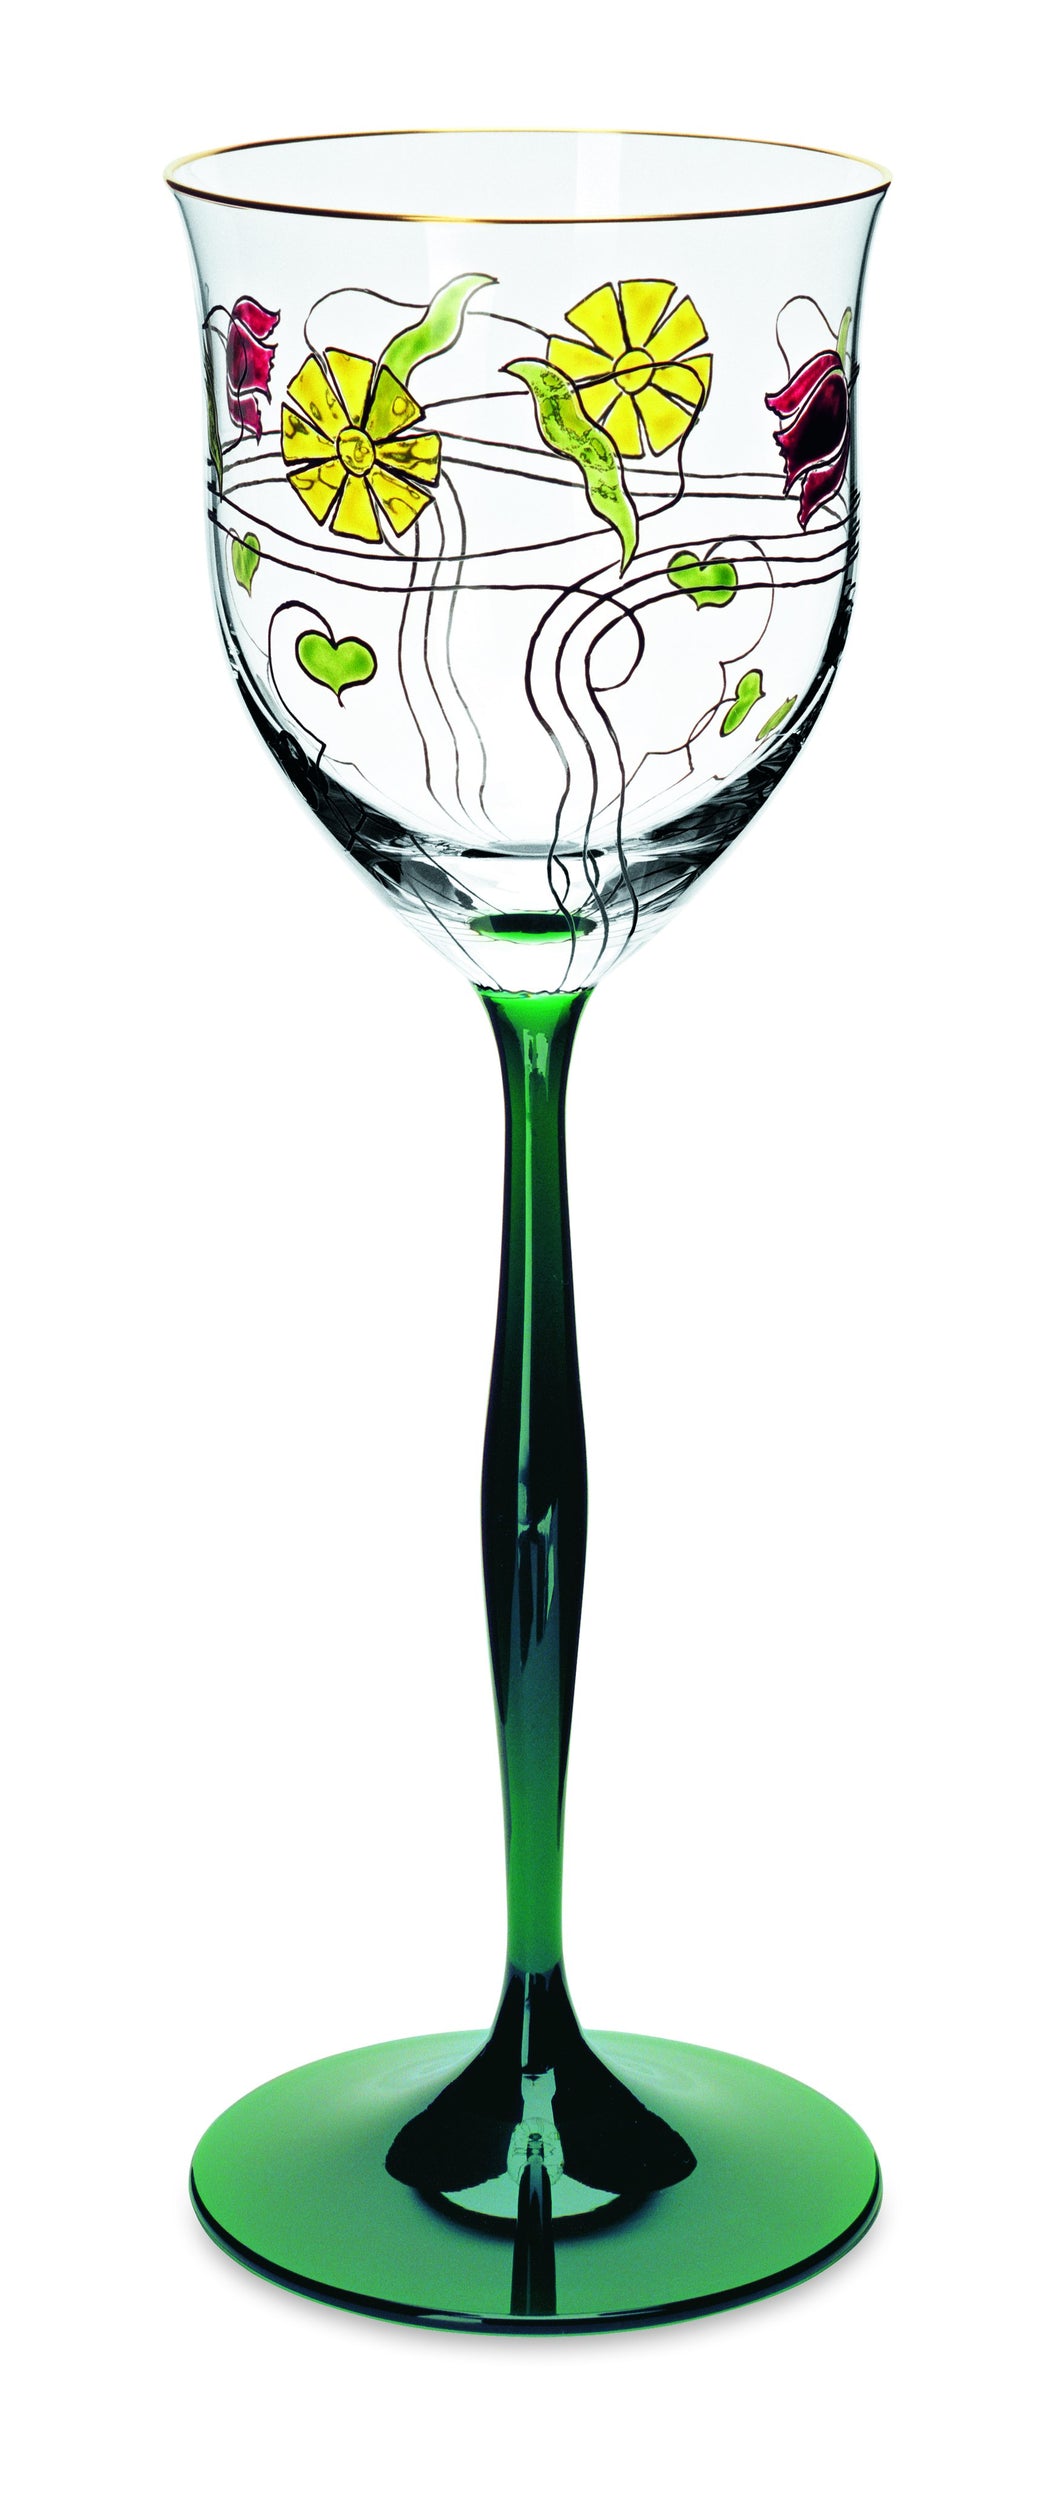 SERENADE jagdgrün/klar, Jugendstilmalerei - Weinglas 213 mm